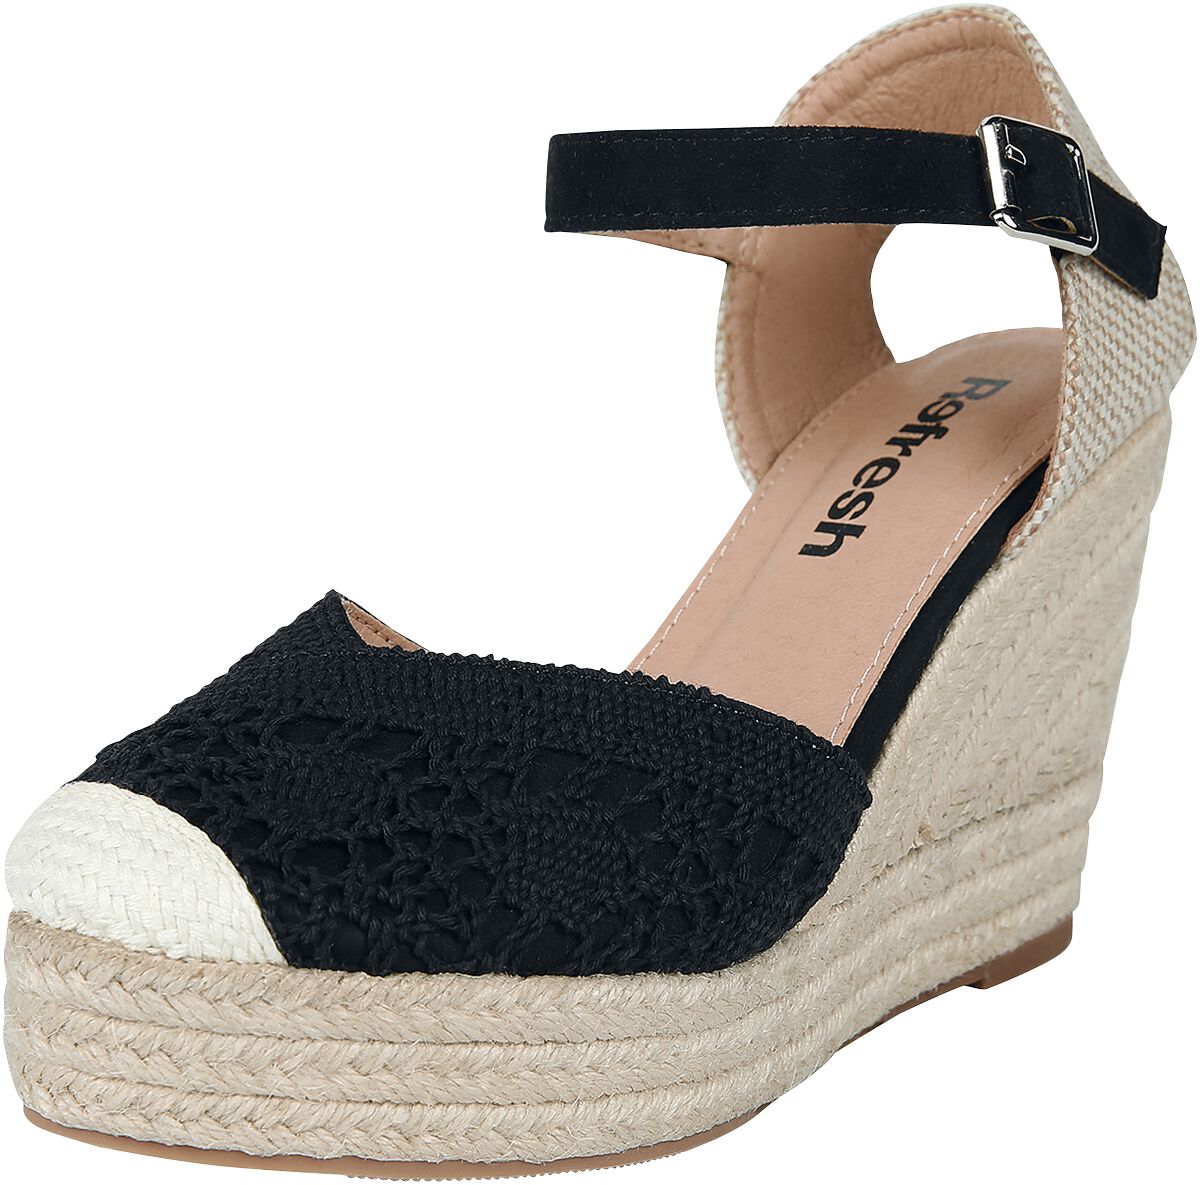 Refresh - Rockabilly High Heel - High Heel Sandale - EU37 bis EU39 - für Damen - Größe EU37 - schwarz